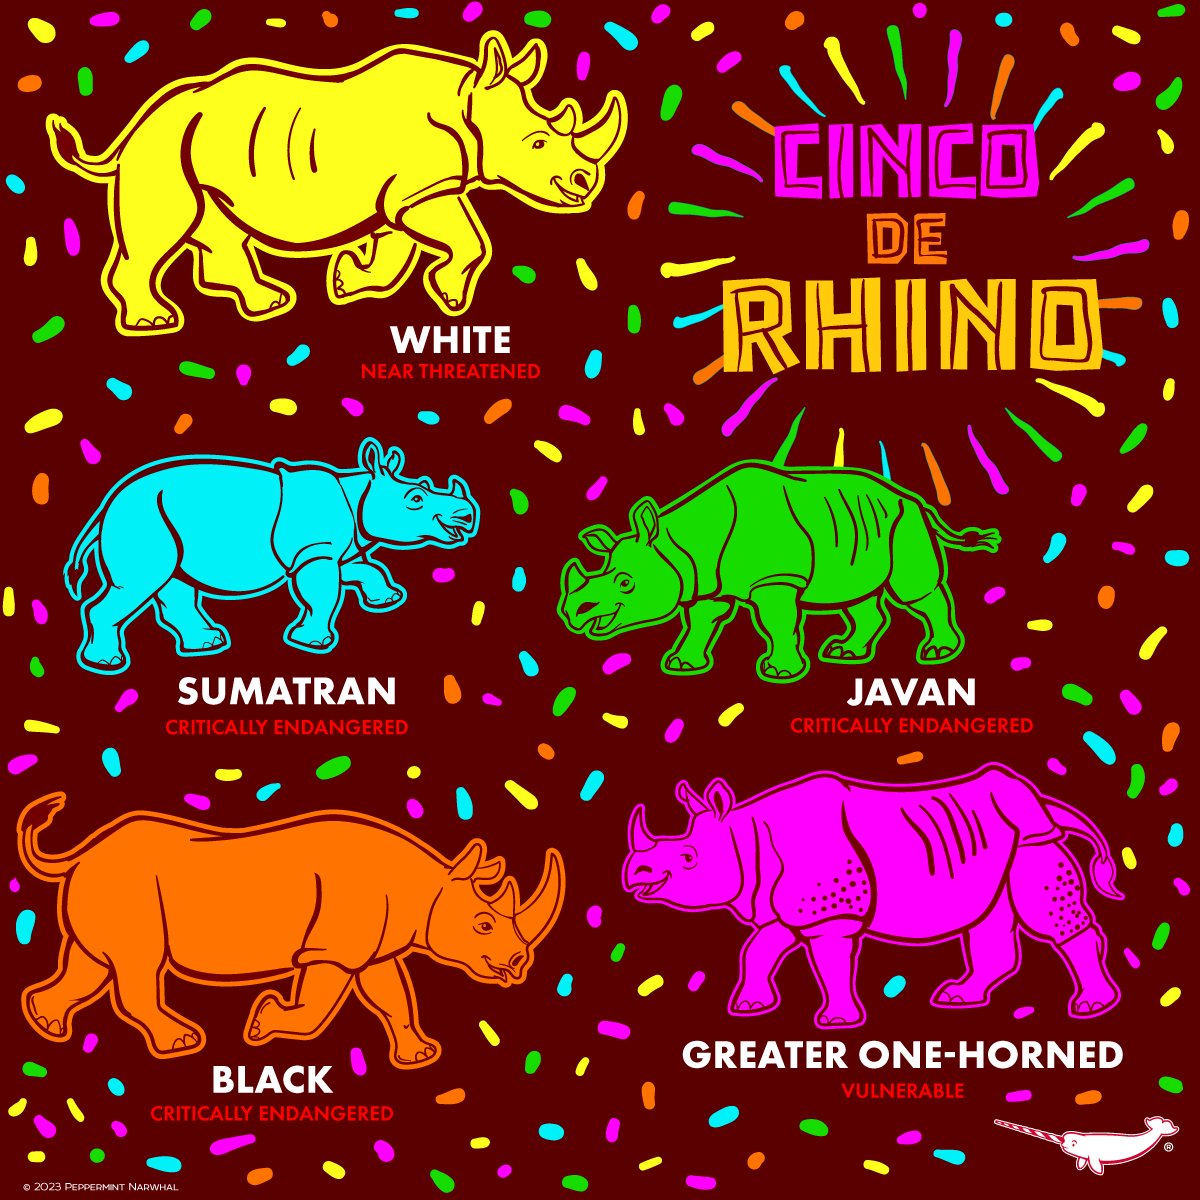 #CincoDeRhino #Rhino MERCH: peppermintnarwhal.com/s/search?q=rhi… more great animal merch #PeppermintNarwhal store: peppermintnarwhal.com Int'l Shoppers visit our store on Etsy: etsy.com/shop/Peppermin… #WhiteRhino #SumatranRhino #JavanRhino #BlackRhino #GreaterOneHornedRhino